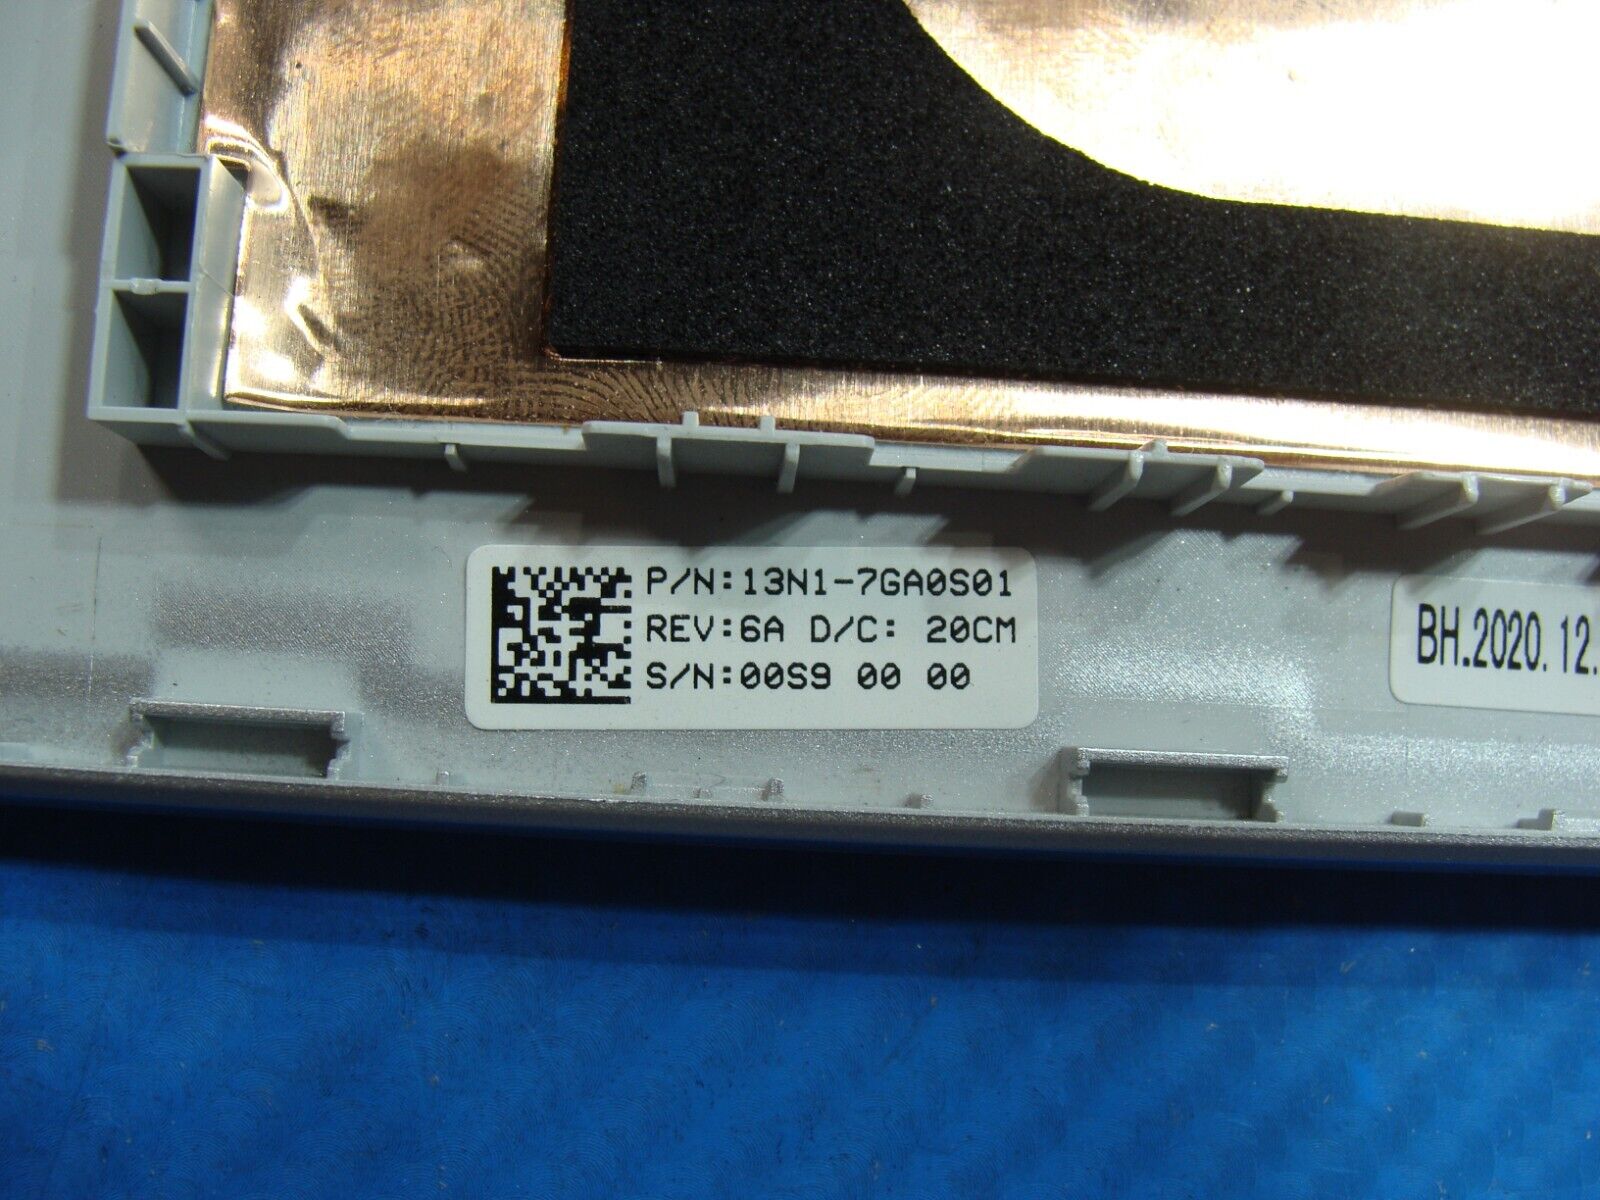 Asus VivoBook M712D 17.3